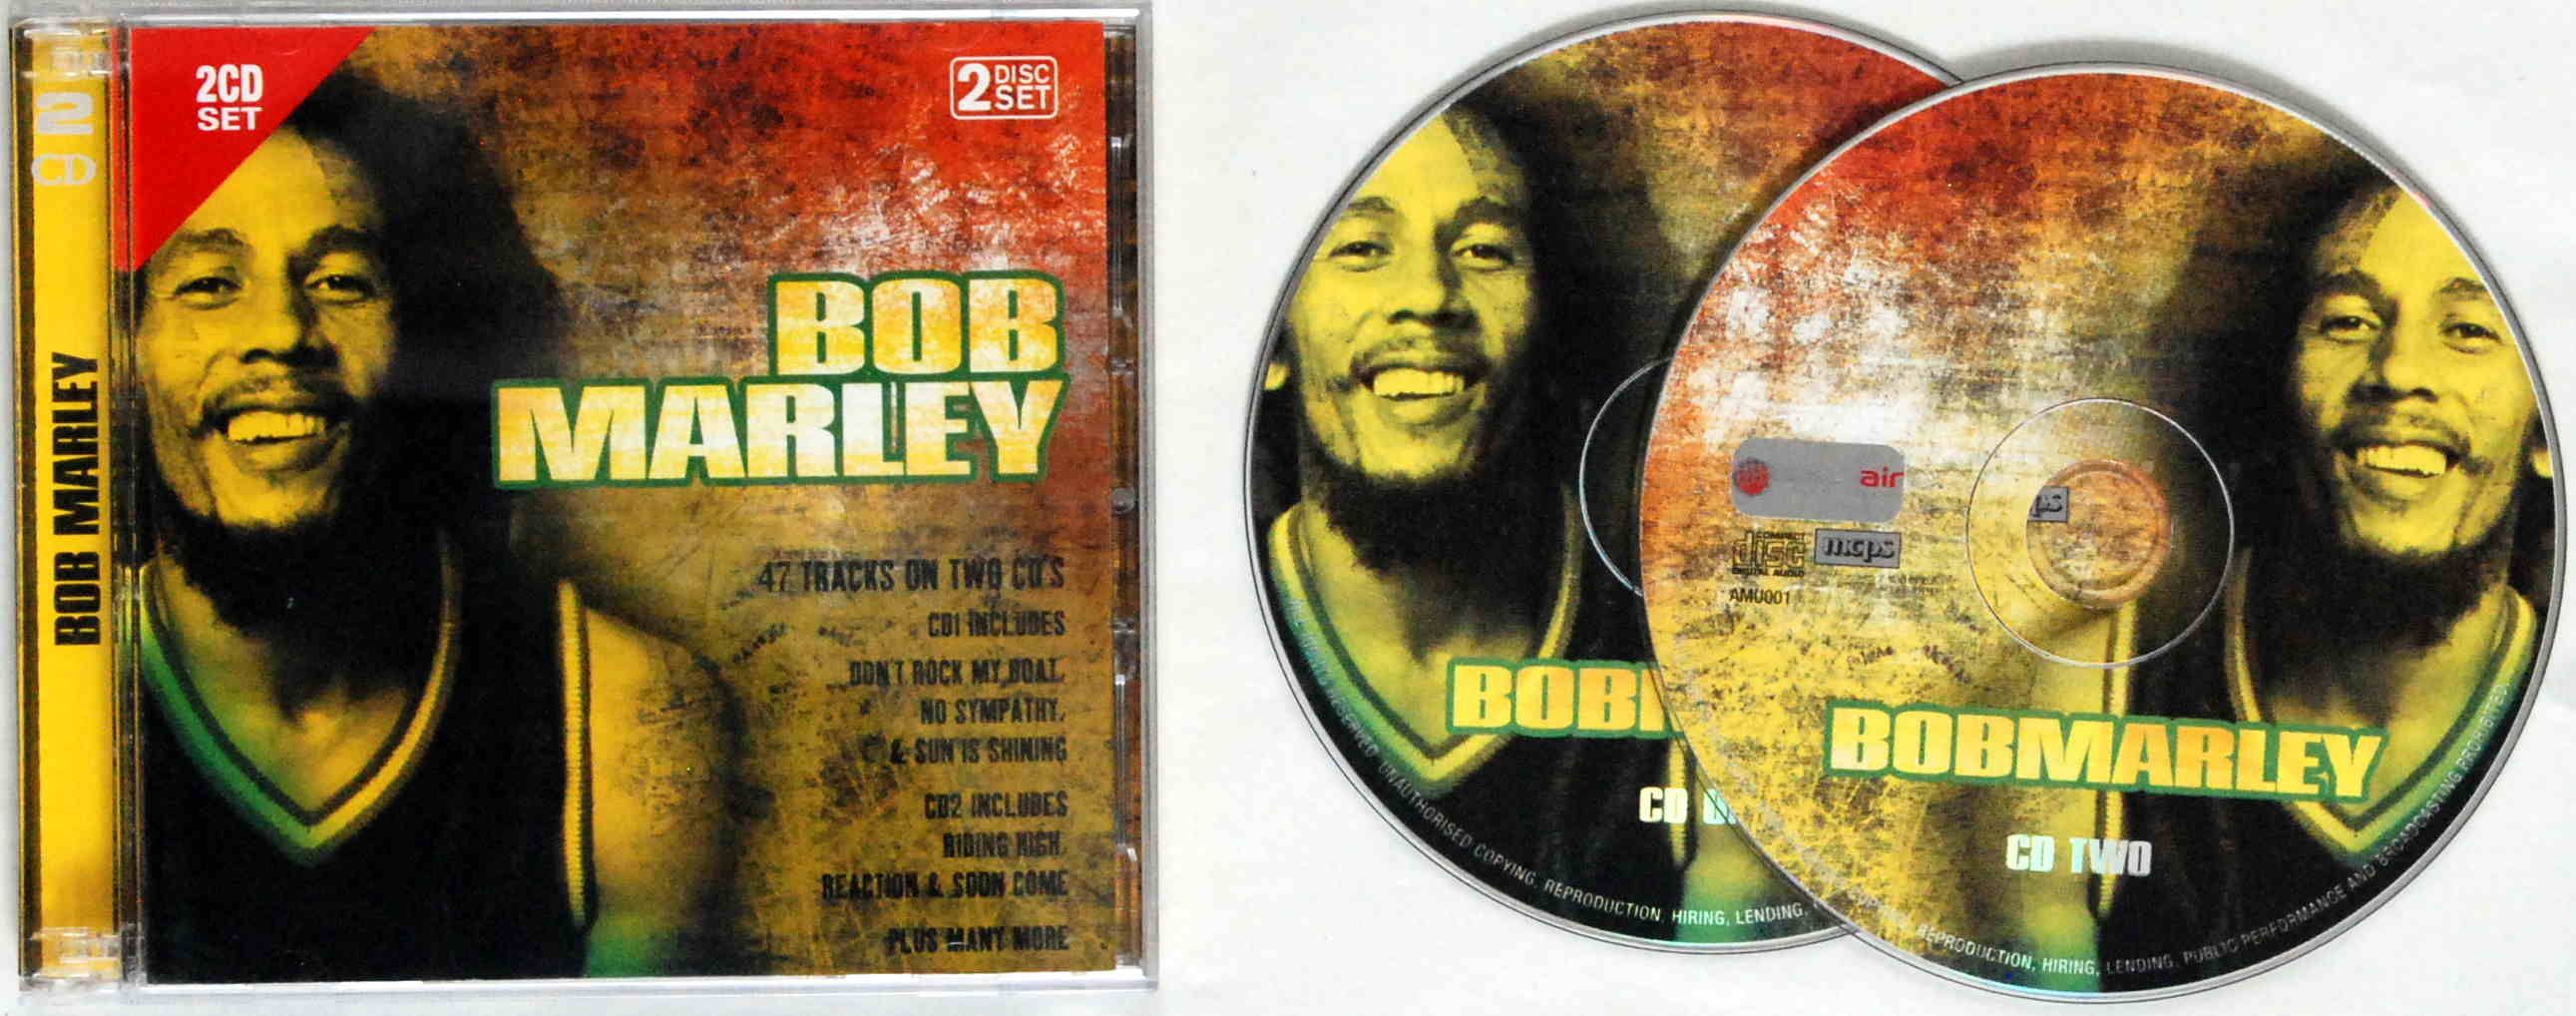 Bob Marley - Bob Marley 2CD (UK)